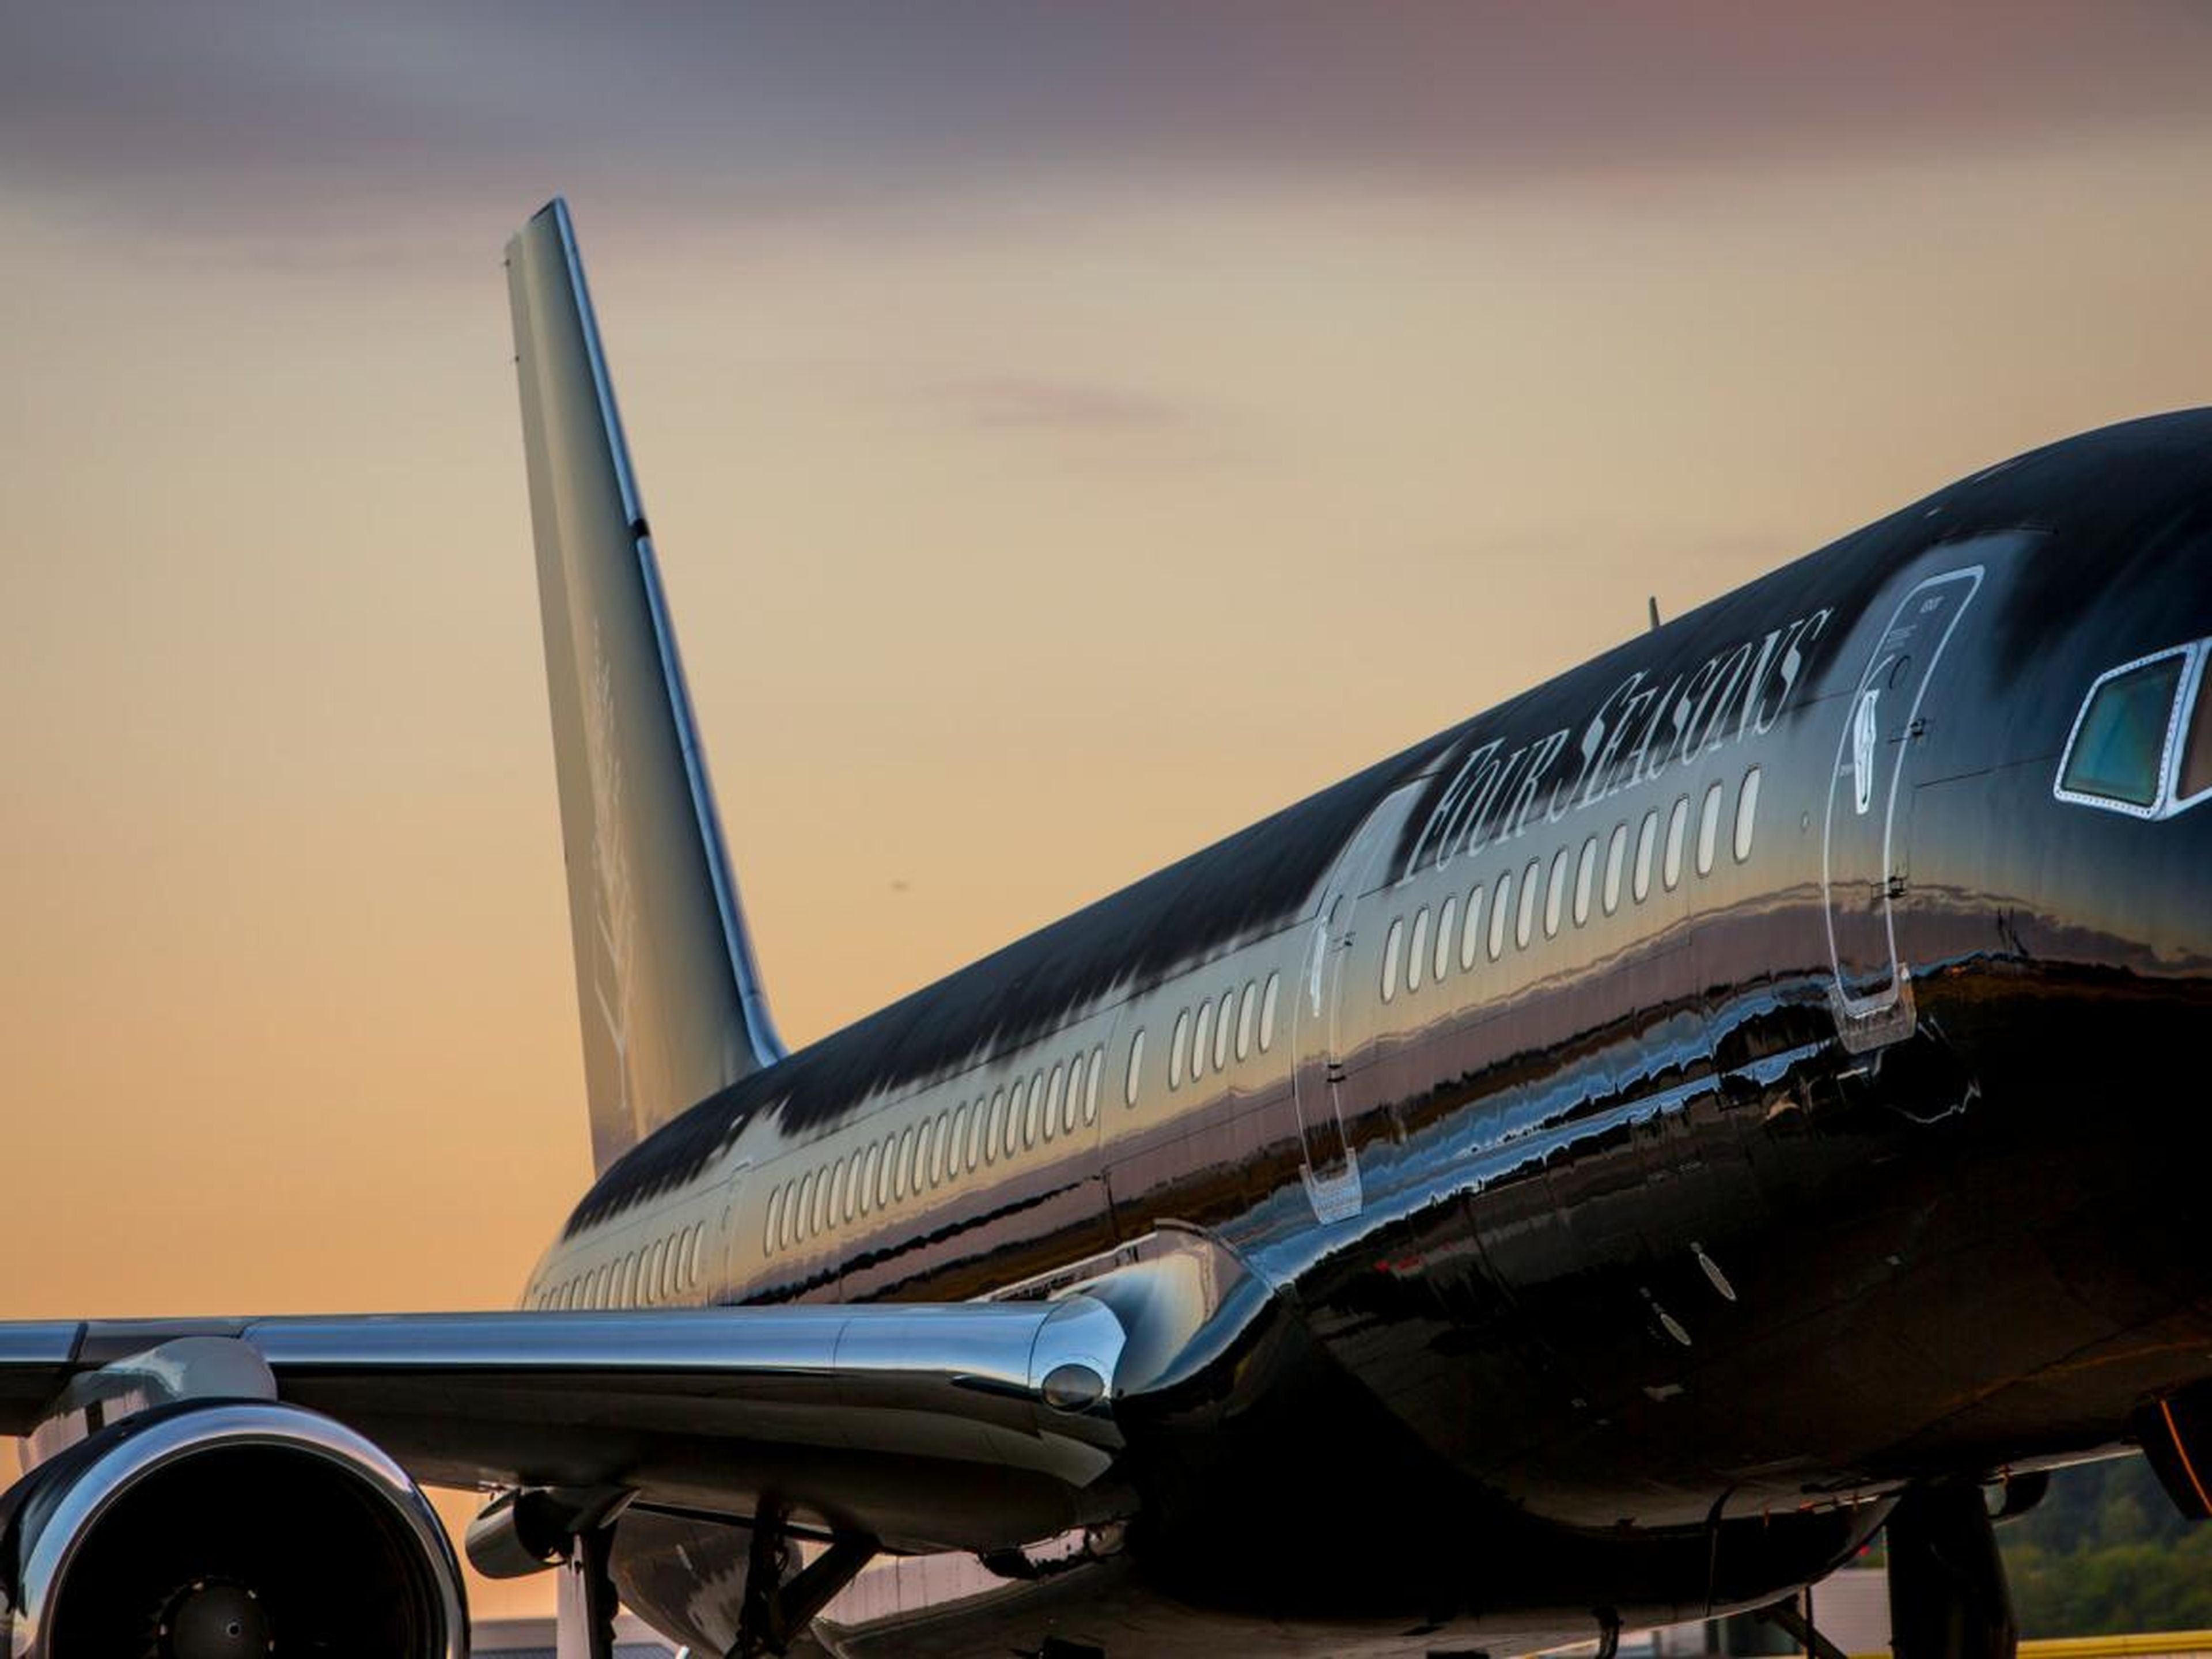 El jet 2015 ha realizado tres viajes de tres semanas cada año desde su lanzamiento.